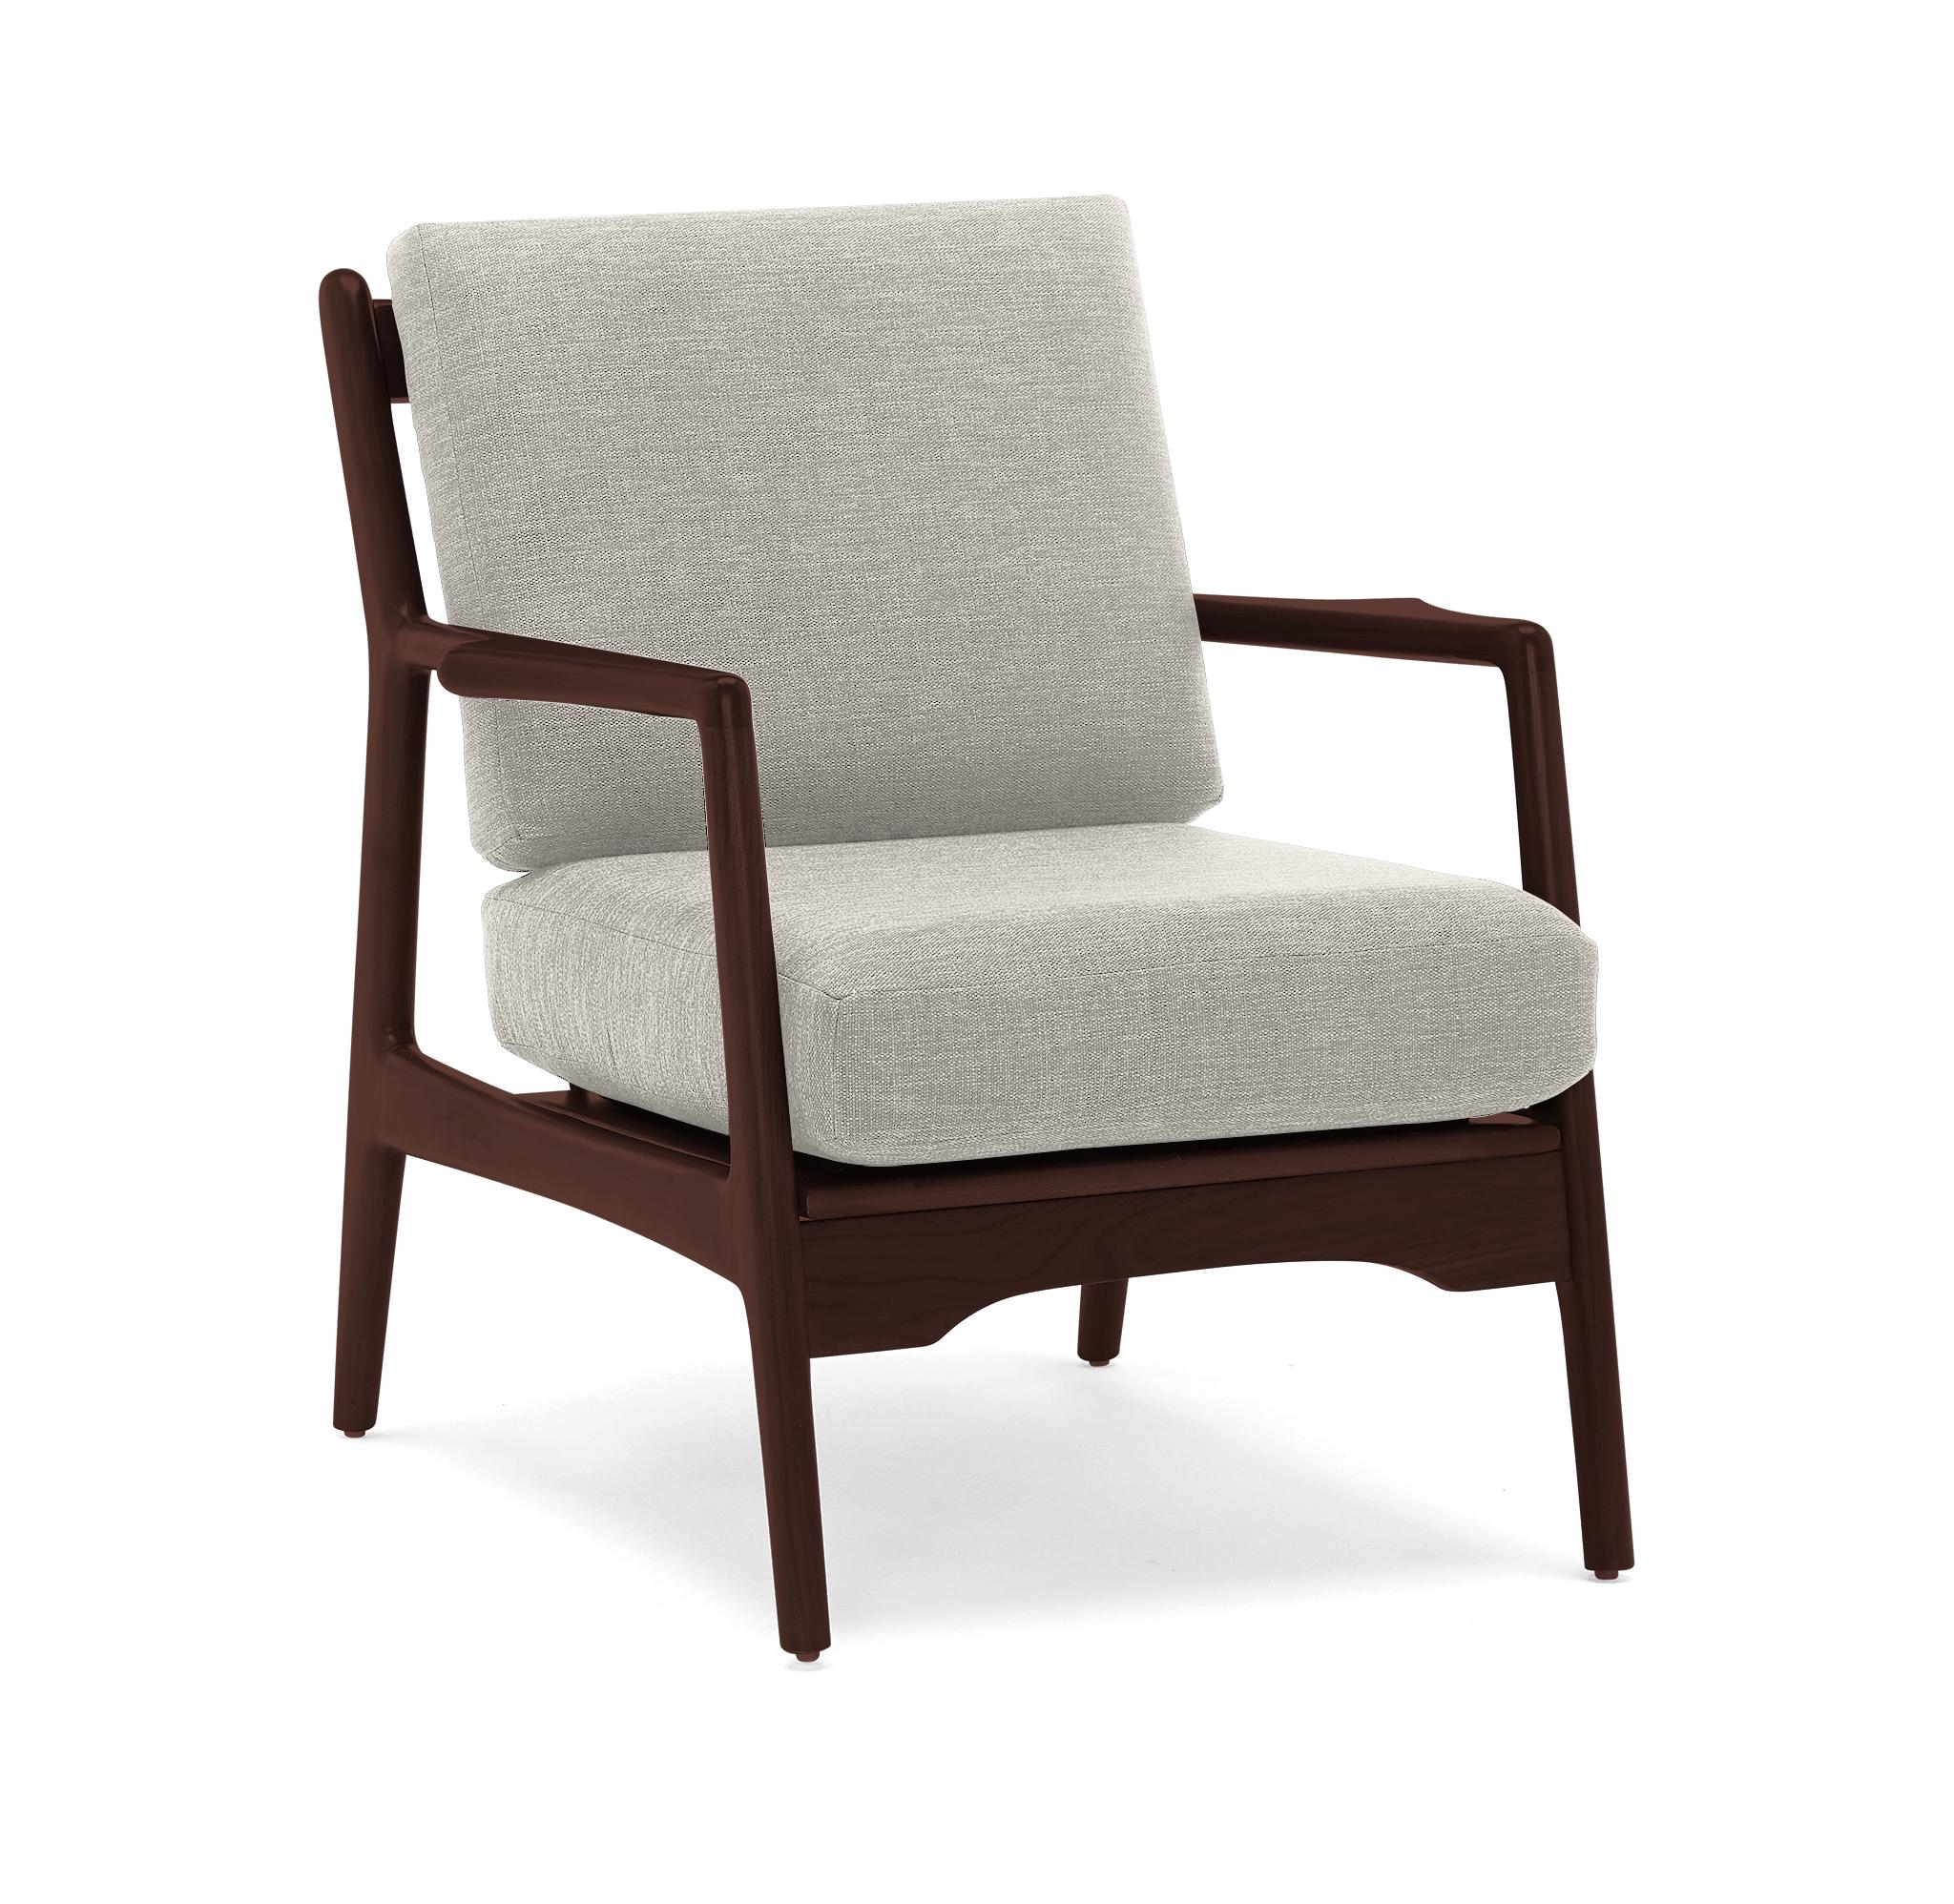 White Collins Mid Century Modern Chair - Bloke Cotton - Walnut - Image 1